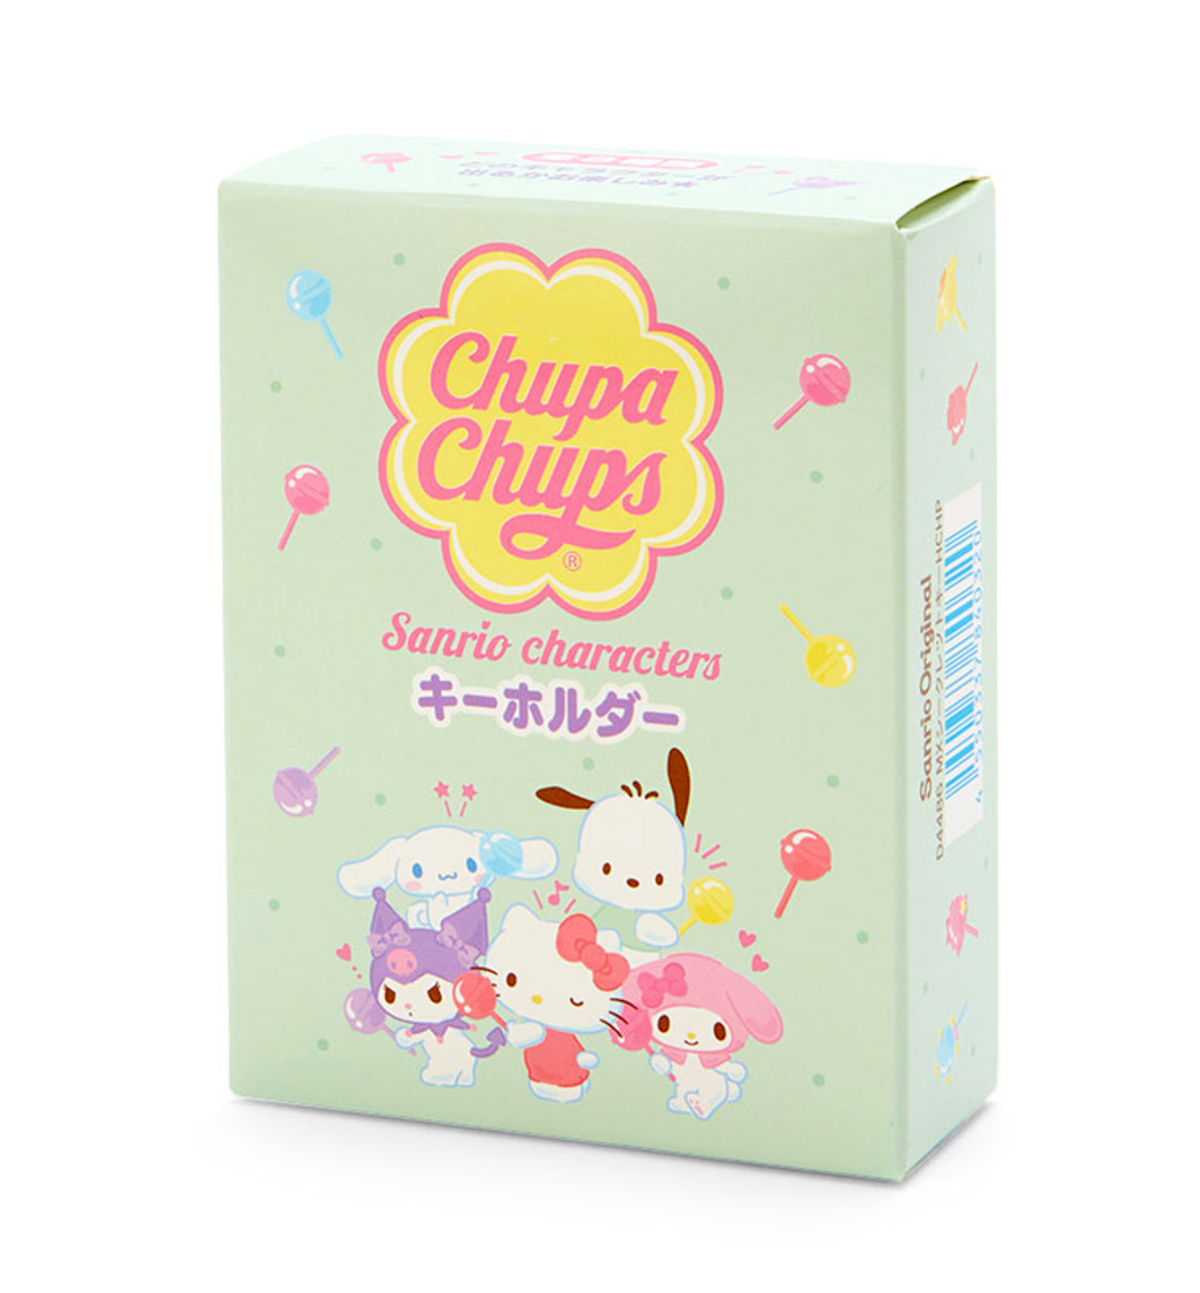 Sanrio Characters & Chupa Chups Acrylic Keyring [Limited Edition]